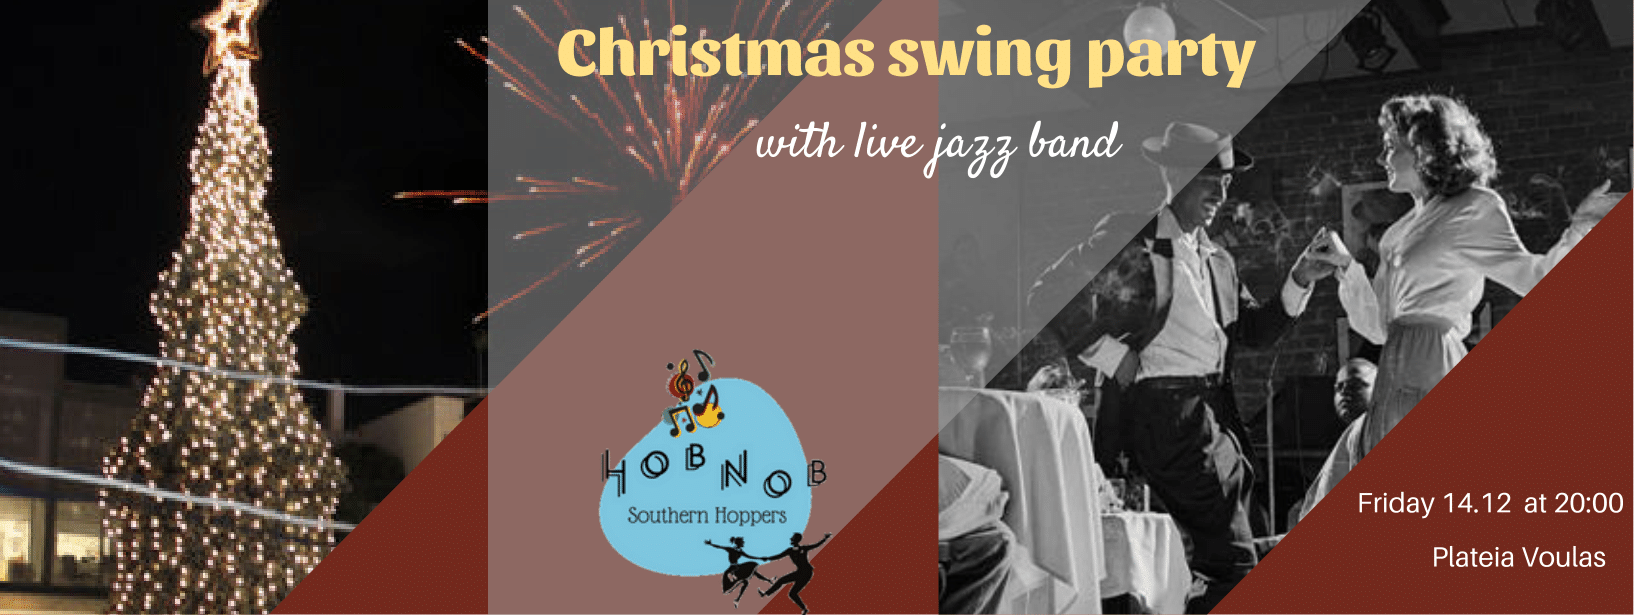 Φωταγώγηση Χριστουγεννιάτικου Δέντρου Βούλας με live Swing party από το Hobnob